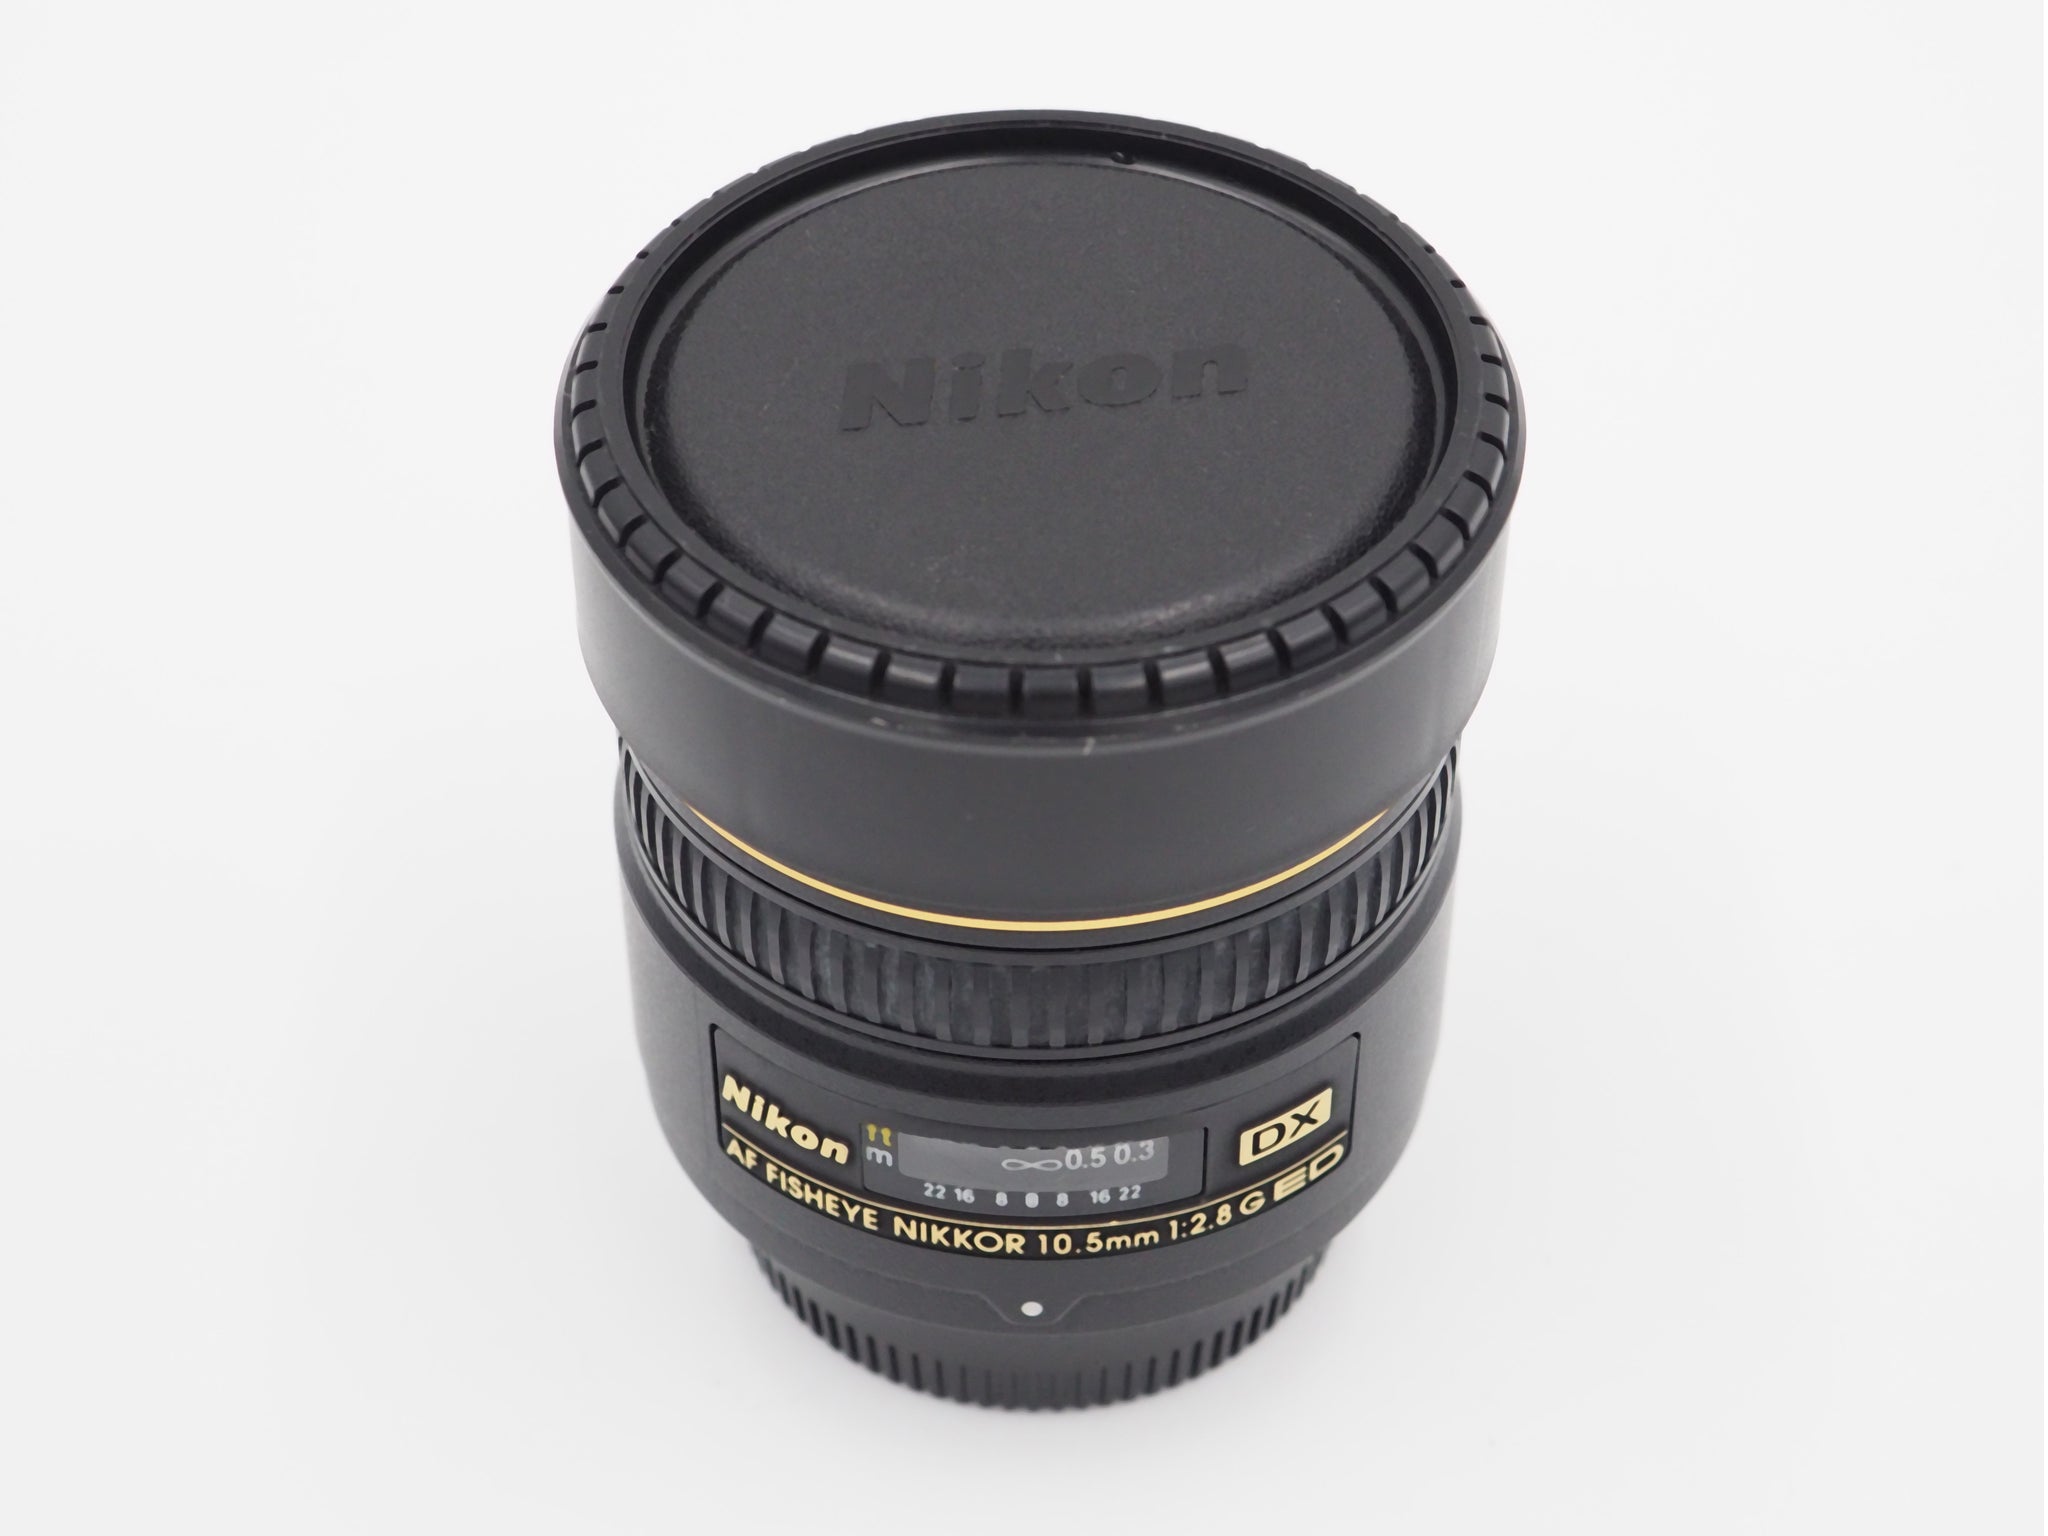 Nikon AF DX Nikkor 10.5mm f/2.8G ED Fisheye Lens - USED – Austin